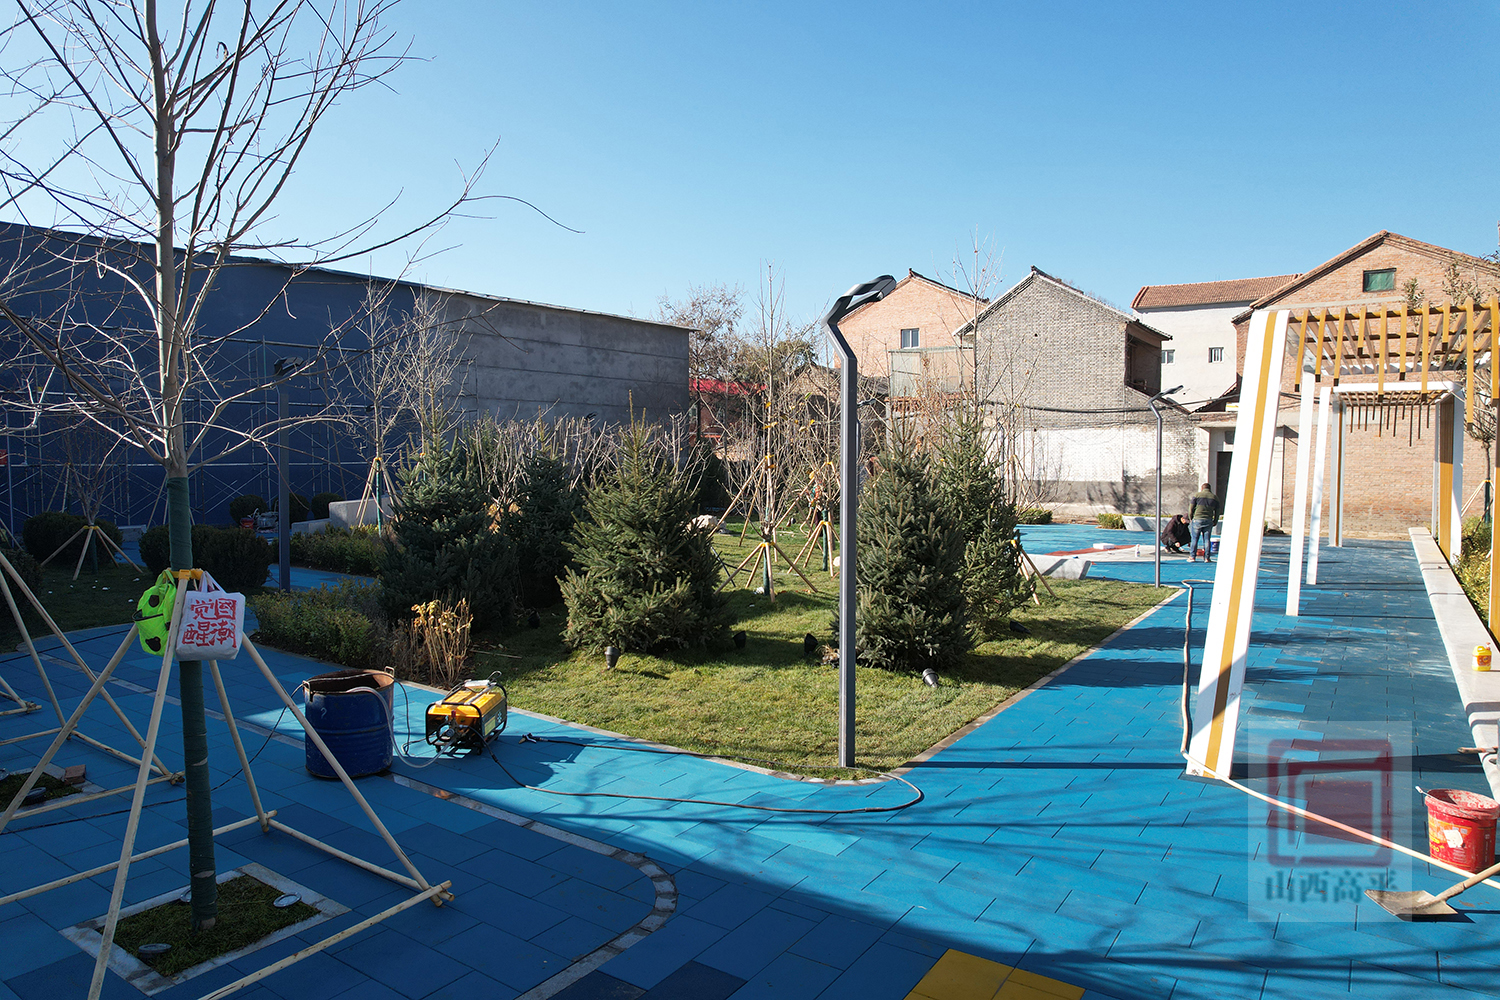  【项目建设冬季行动】“口袋公园”打造家门口的“微幸福”